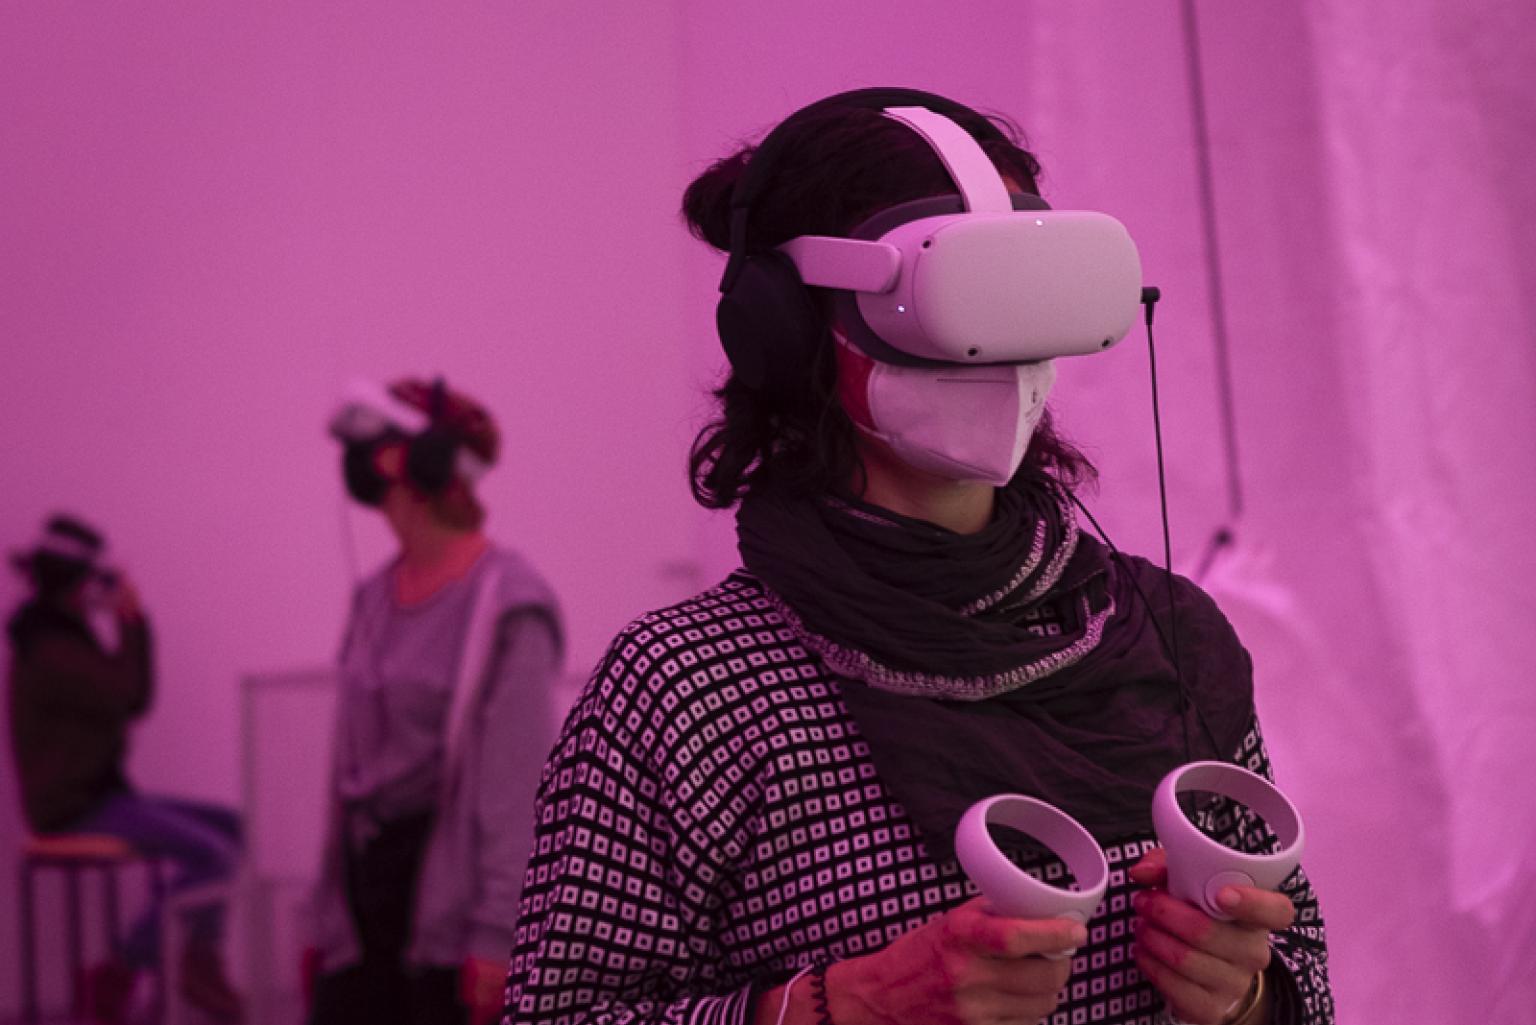 Eine Frau mit einer VR-Brille und zwei Hand-Controllern in den Händen steht in einem pinken Raum. Im Hintergrund eine weitere Person mit VR-Brille.